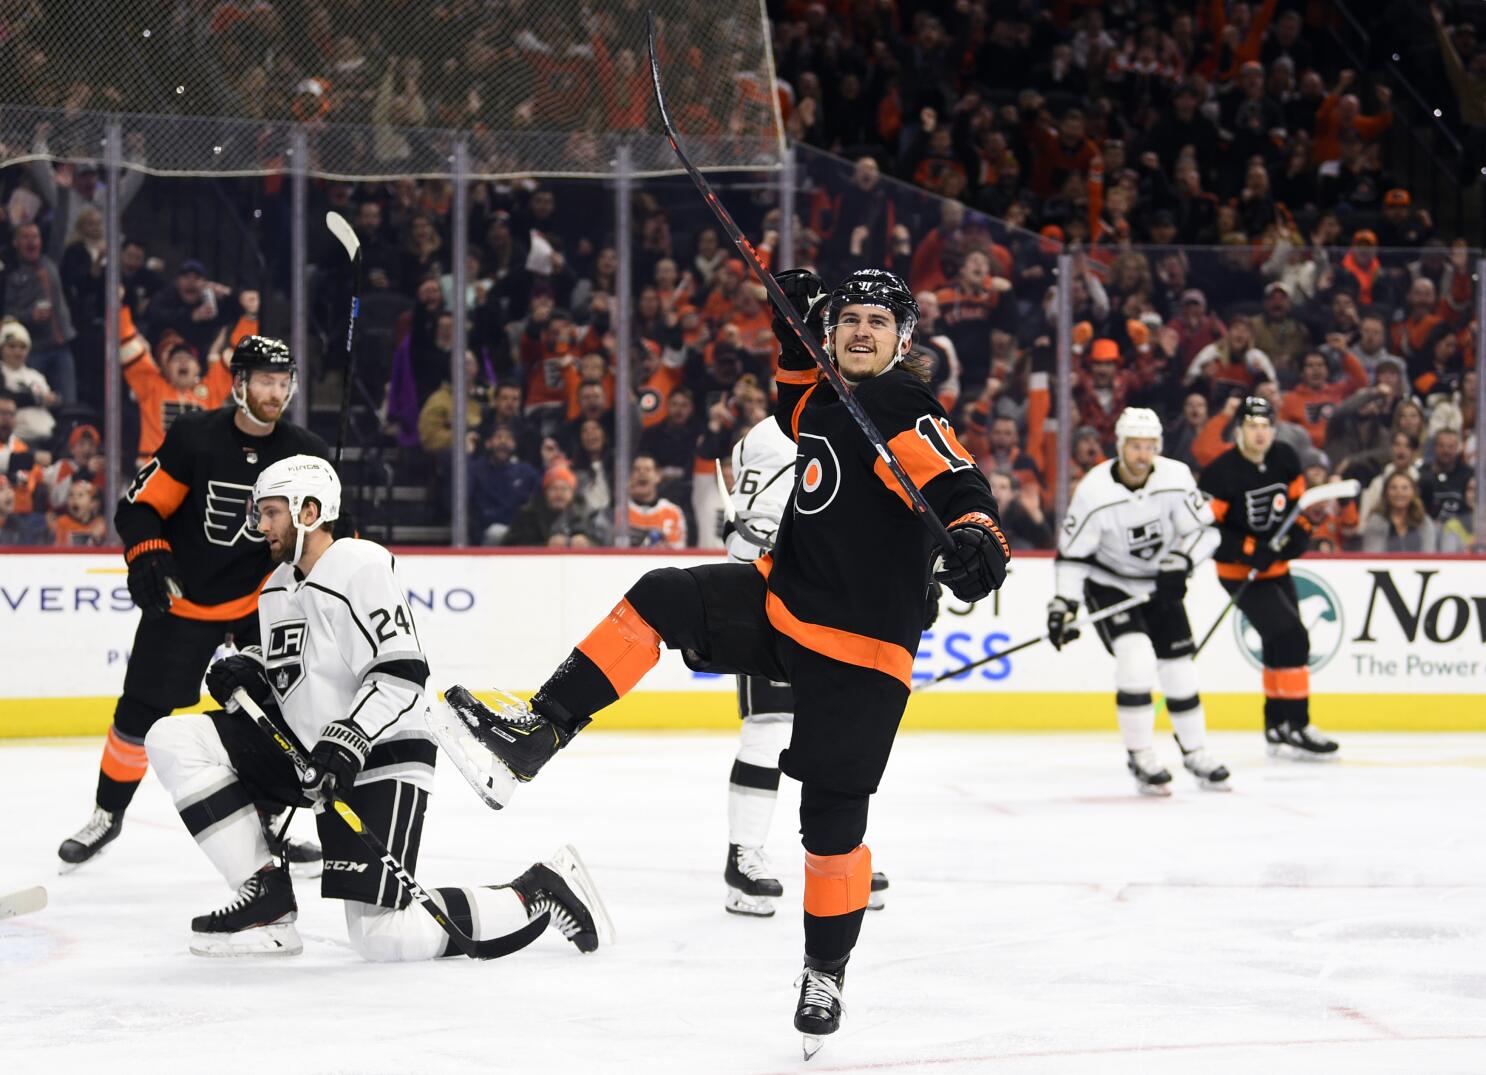 Konecny records hat trick, leads Flyers past Penguins 5-2